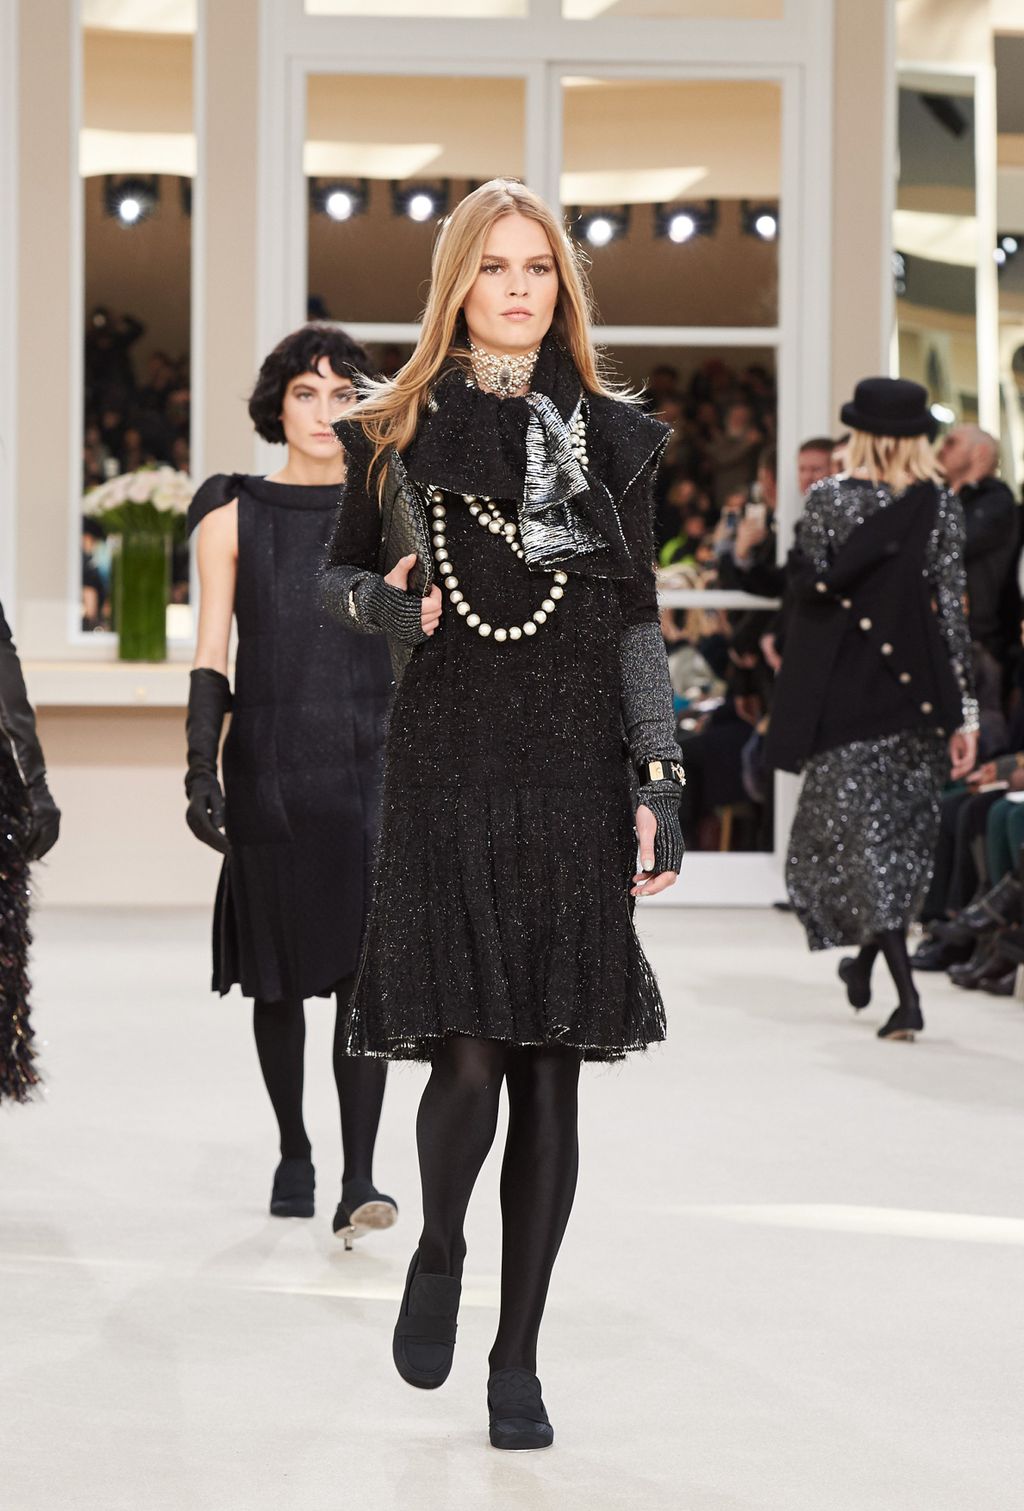 Chanel F/W 16 womenswear #82 - Tagwalk: The Fashion Search Engine